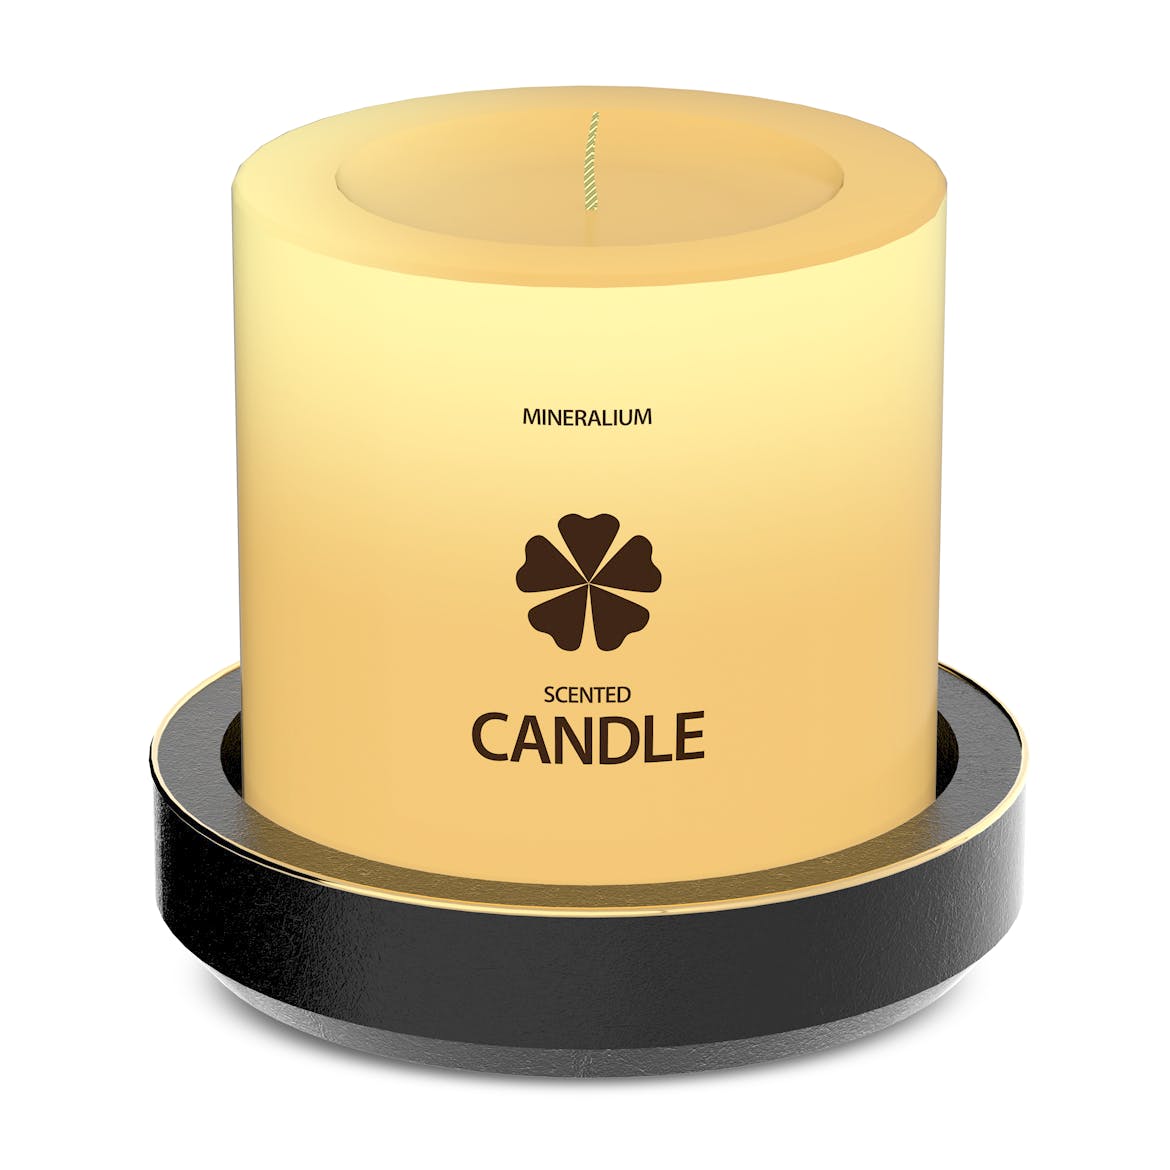 木制蜡烛外观设计PSD样机模板 Wooden Candle PSD Mock-ups插图(2)